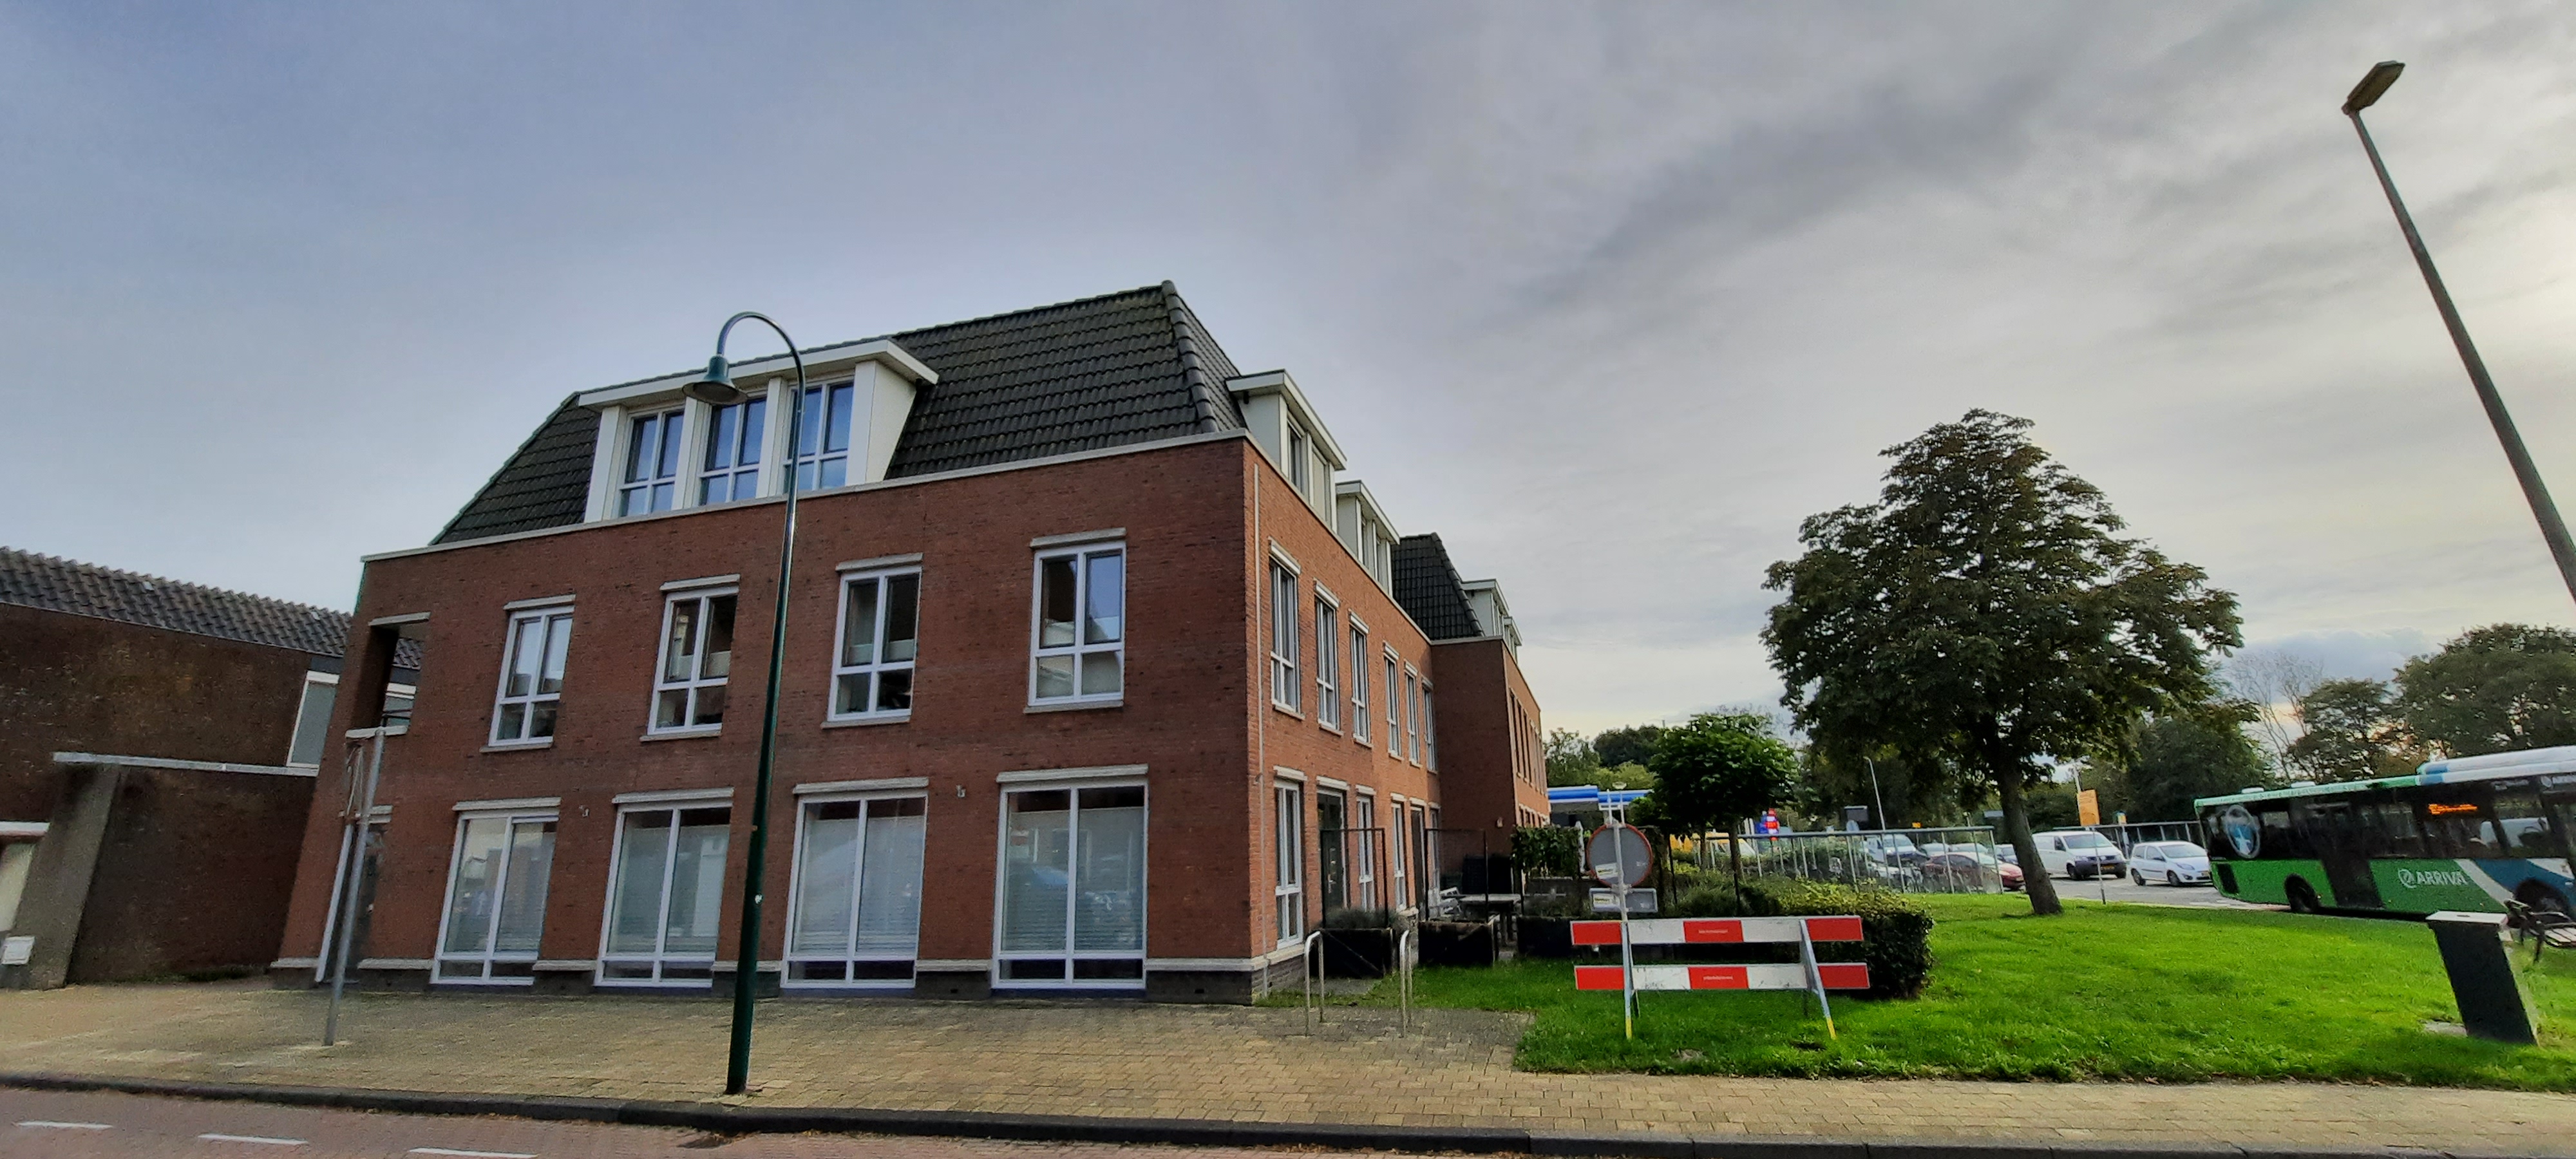 Dorpsstraat 132, 2391 BN Hazerswoude-Dorp, Nederland